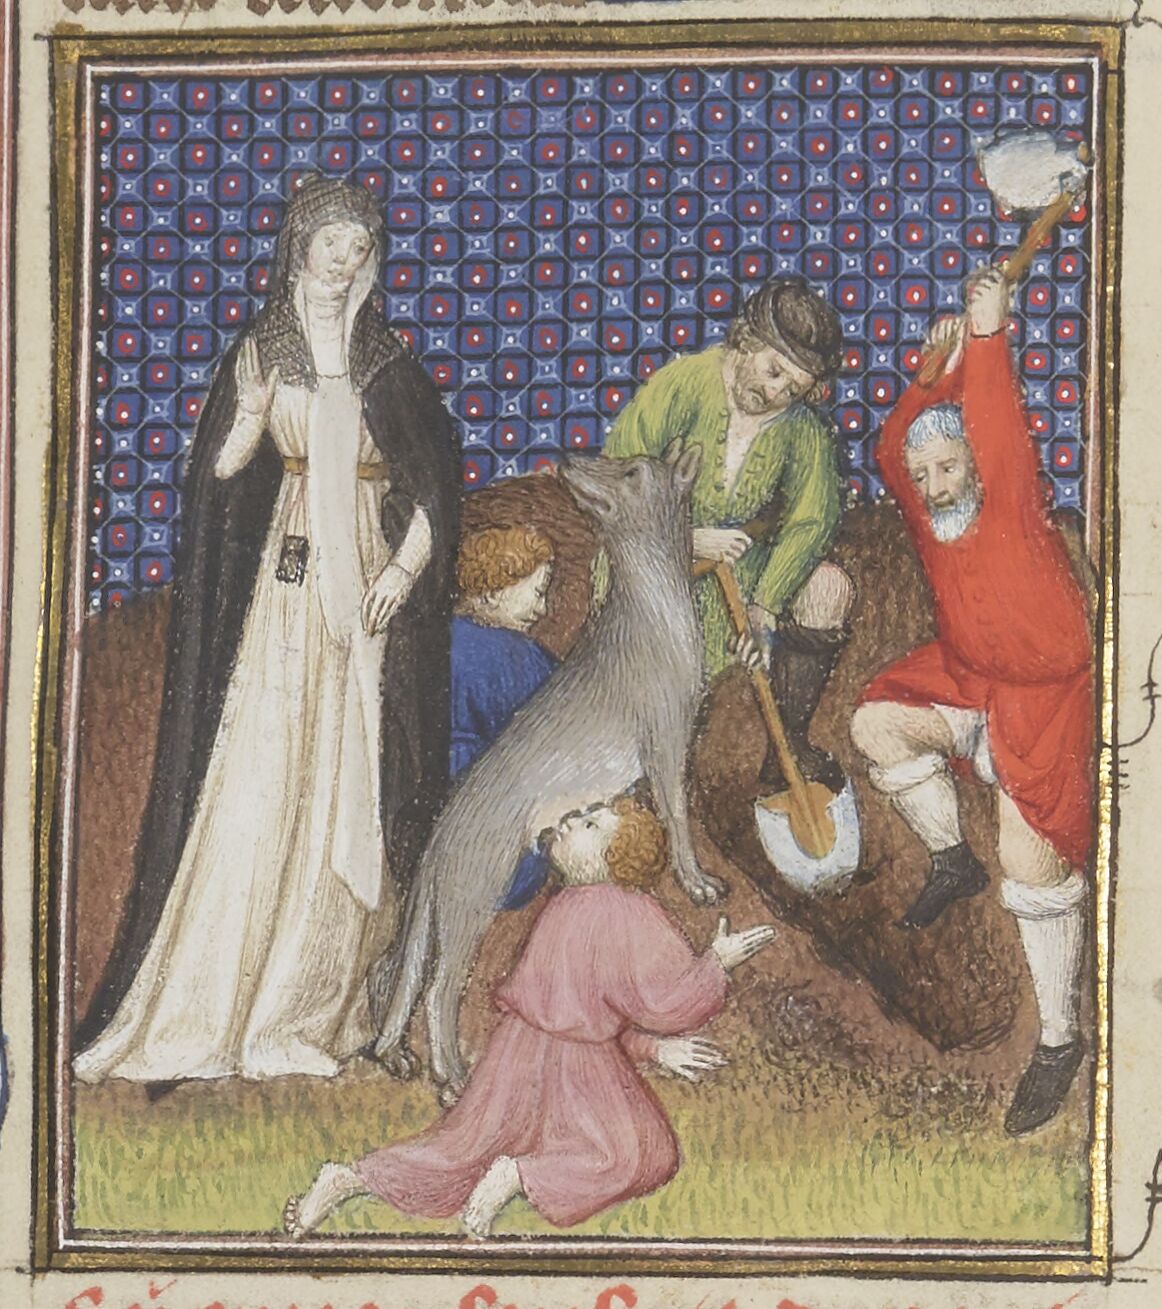 Rhea Silvia vor ihrem Grab, Illustration aus einer Handschrift von Boccaccio, De claris mulieribus, 14. Jh., Paris: BNF, Français 12420, f. 69v.